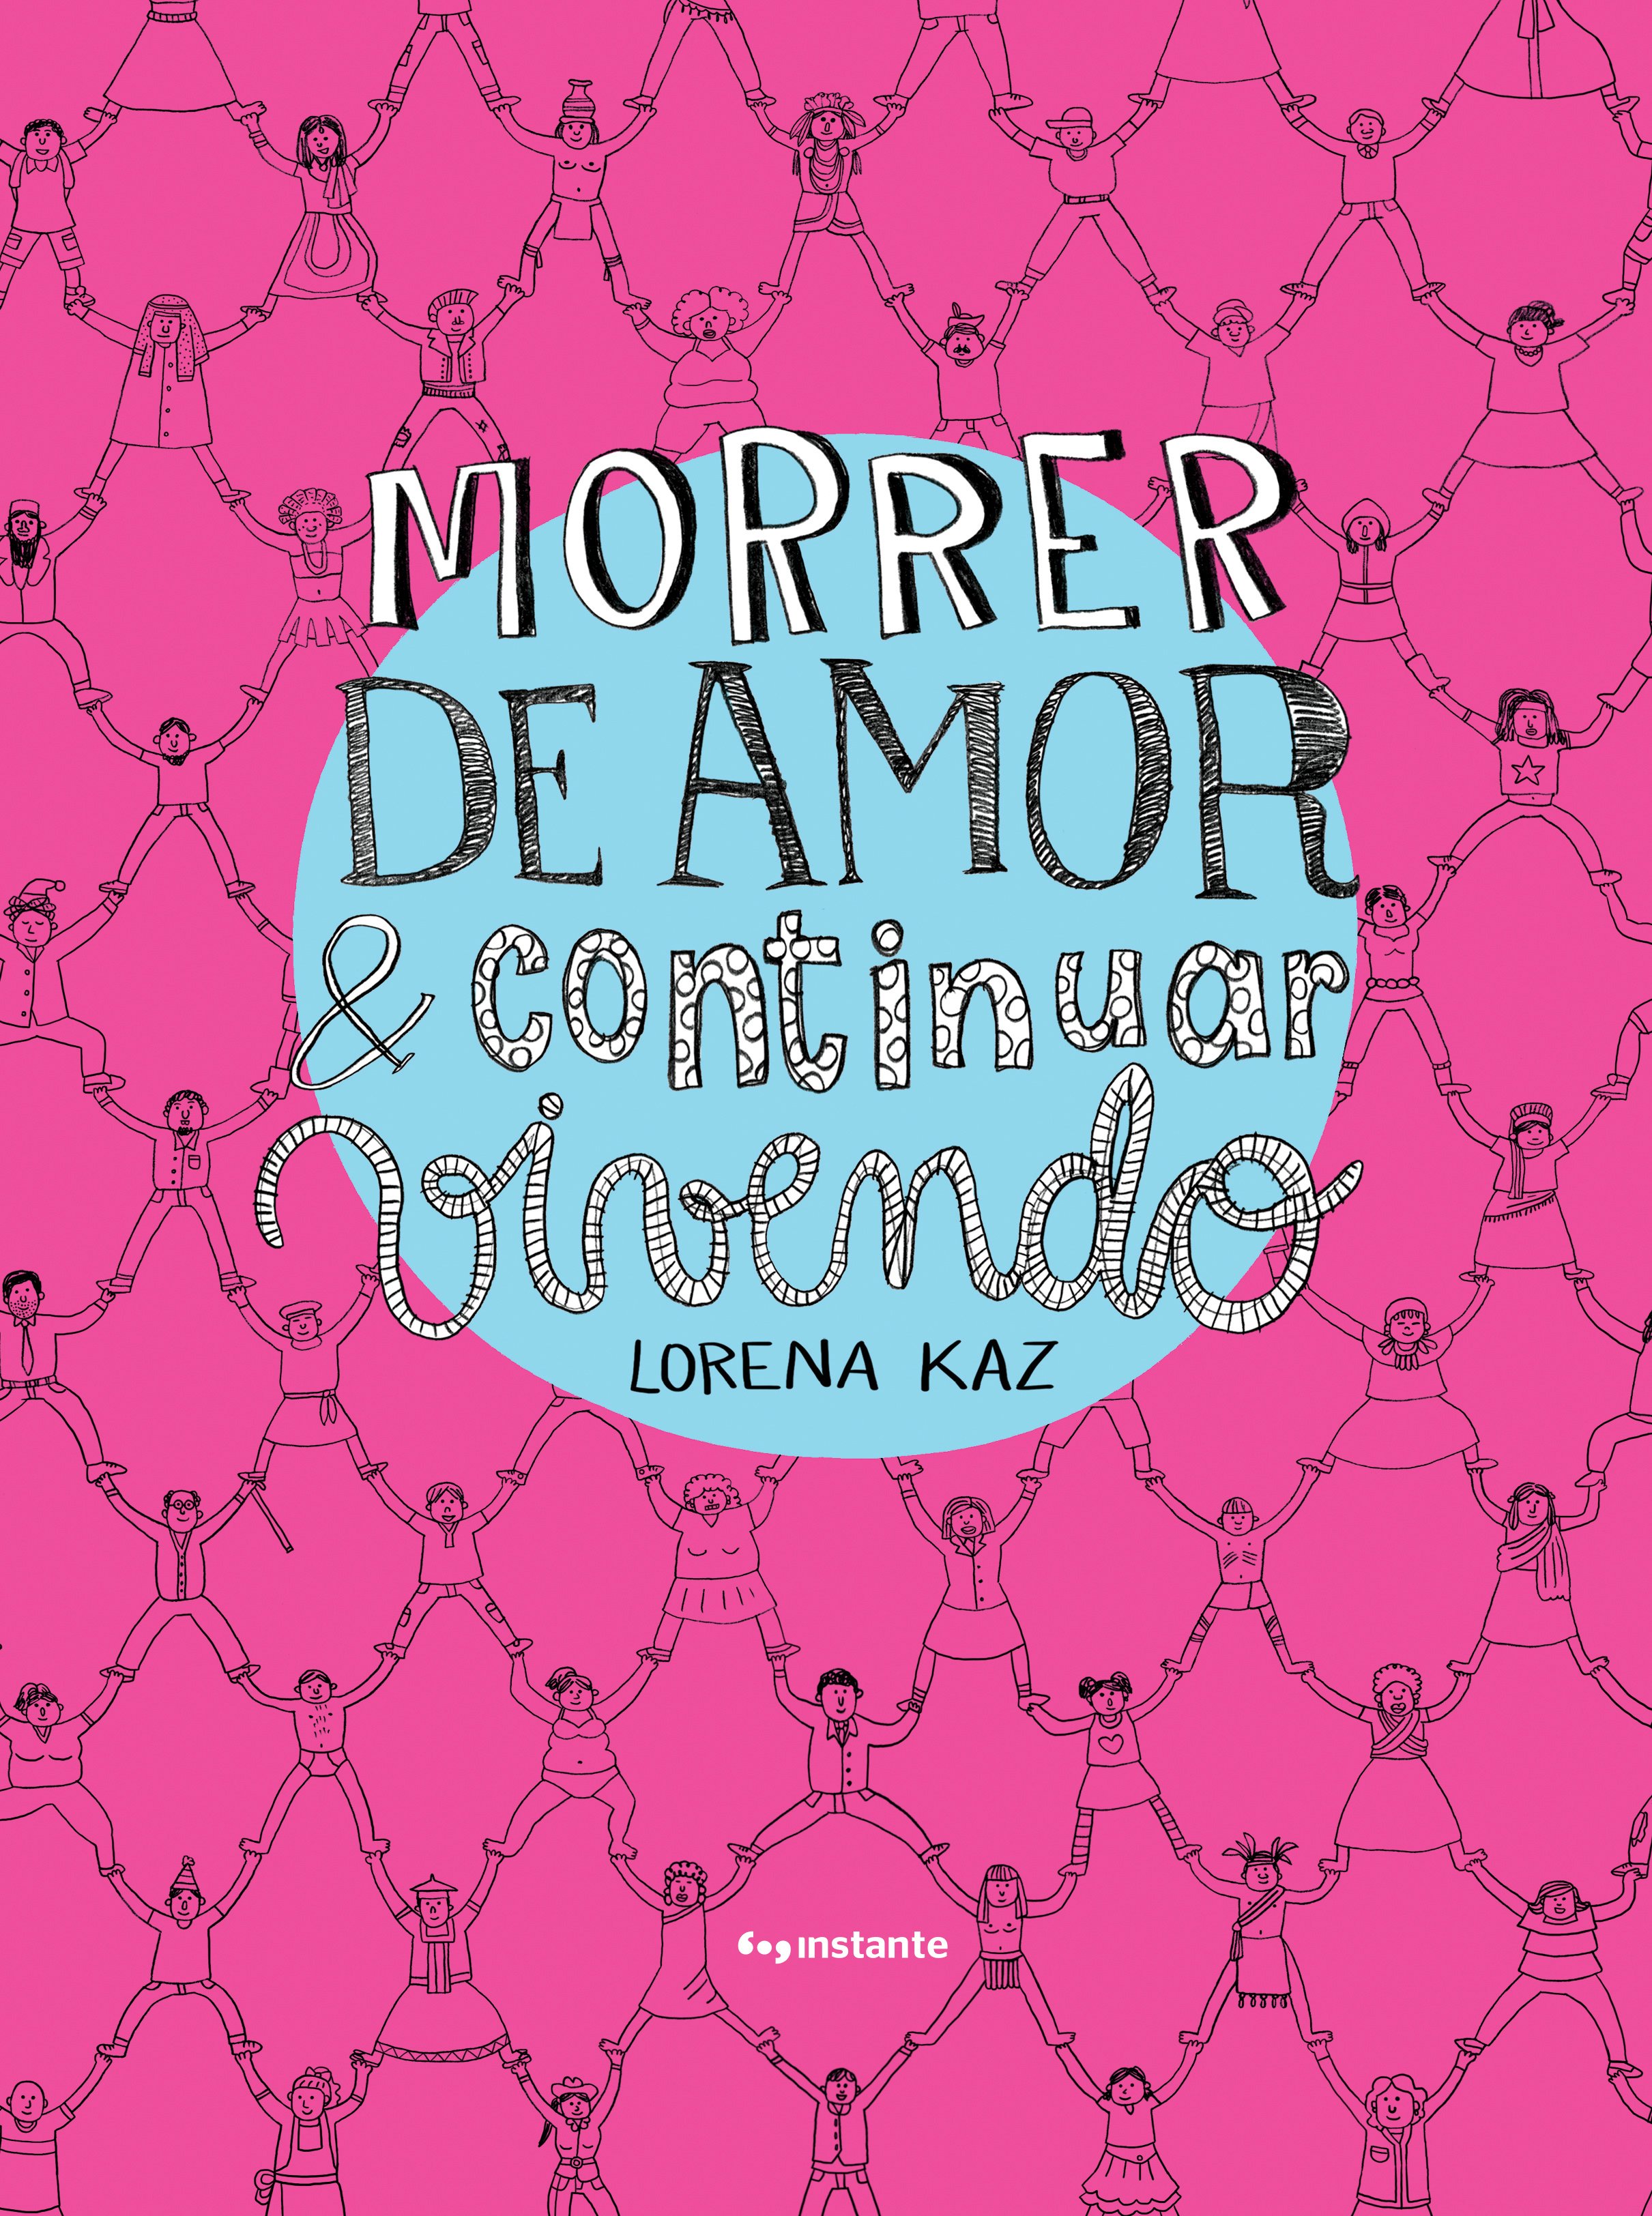 Morrer de amor & continuar vivendo, livro de Lorena Kaz